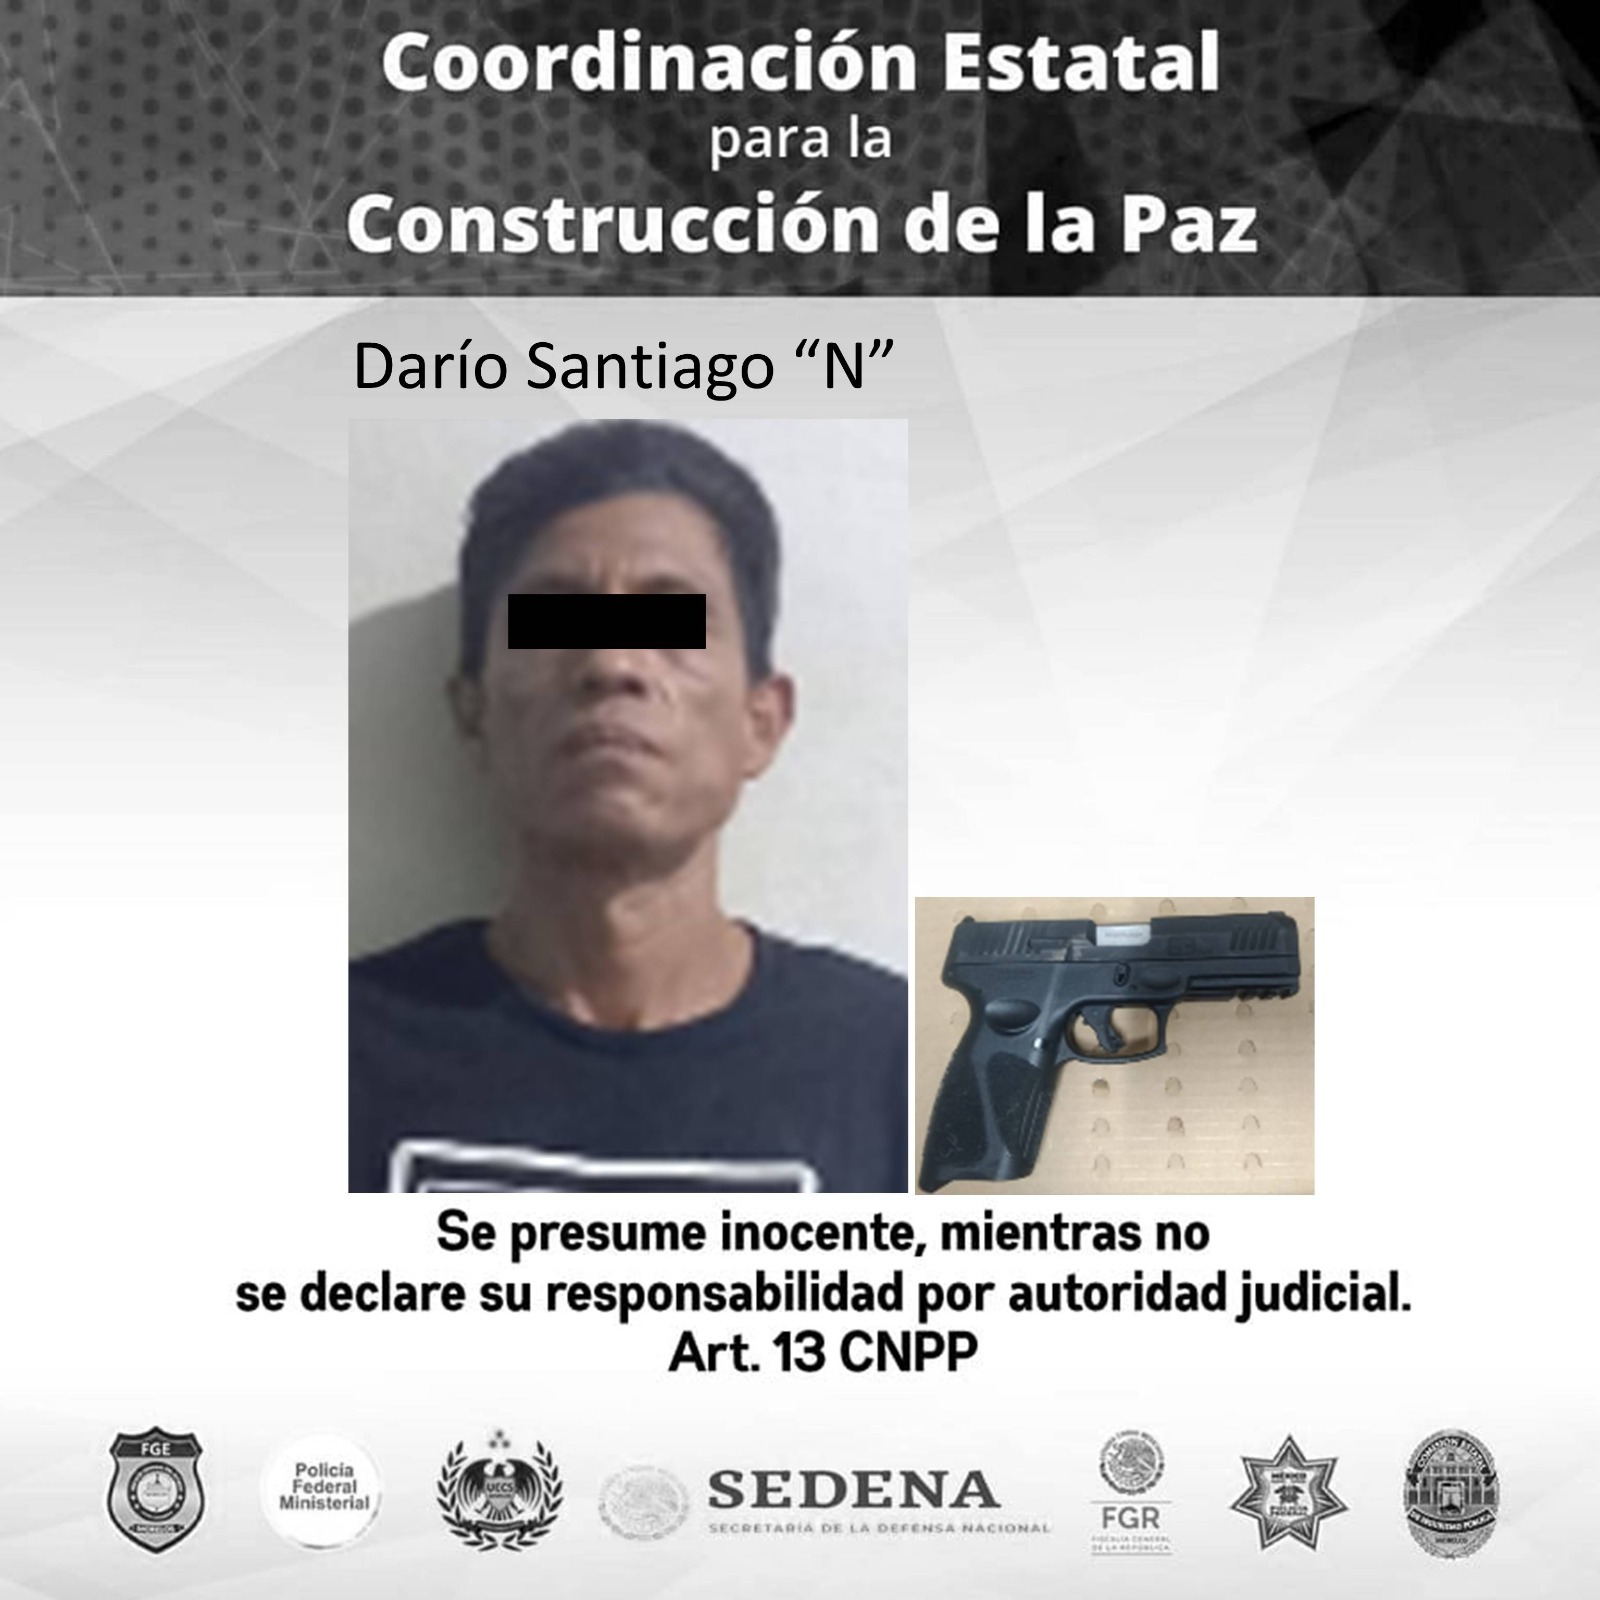 La Coordinación de la Policía de Morelos detiene a un hombre por violación a la Ley Federal de Armas de Fuego y Explosivos